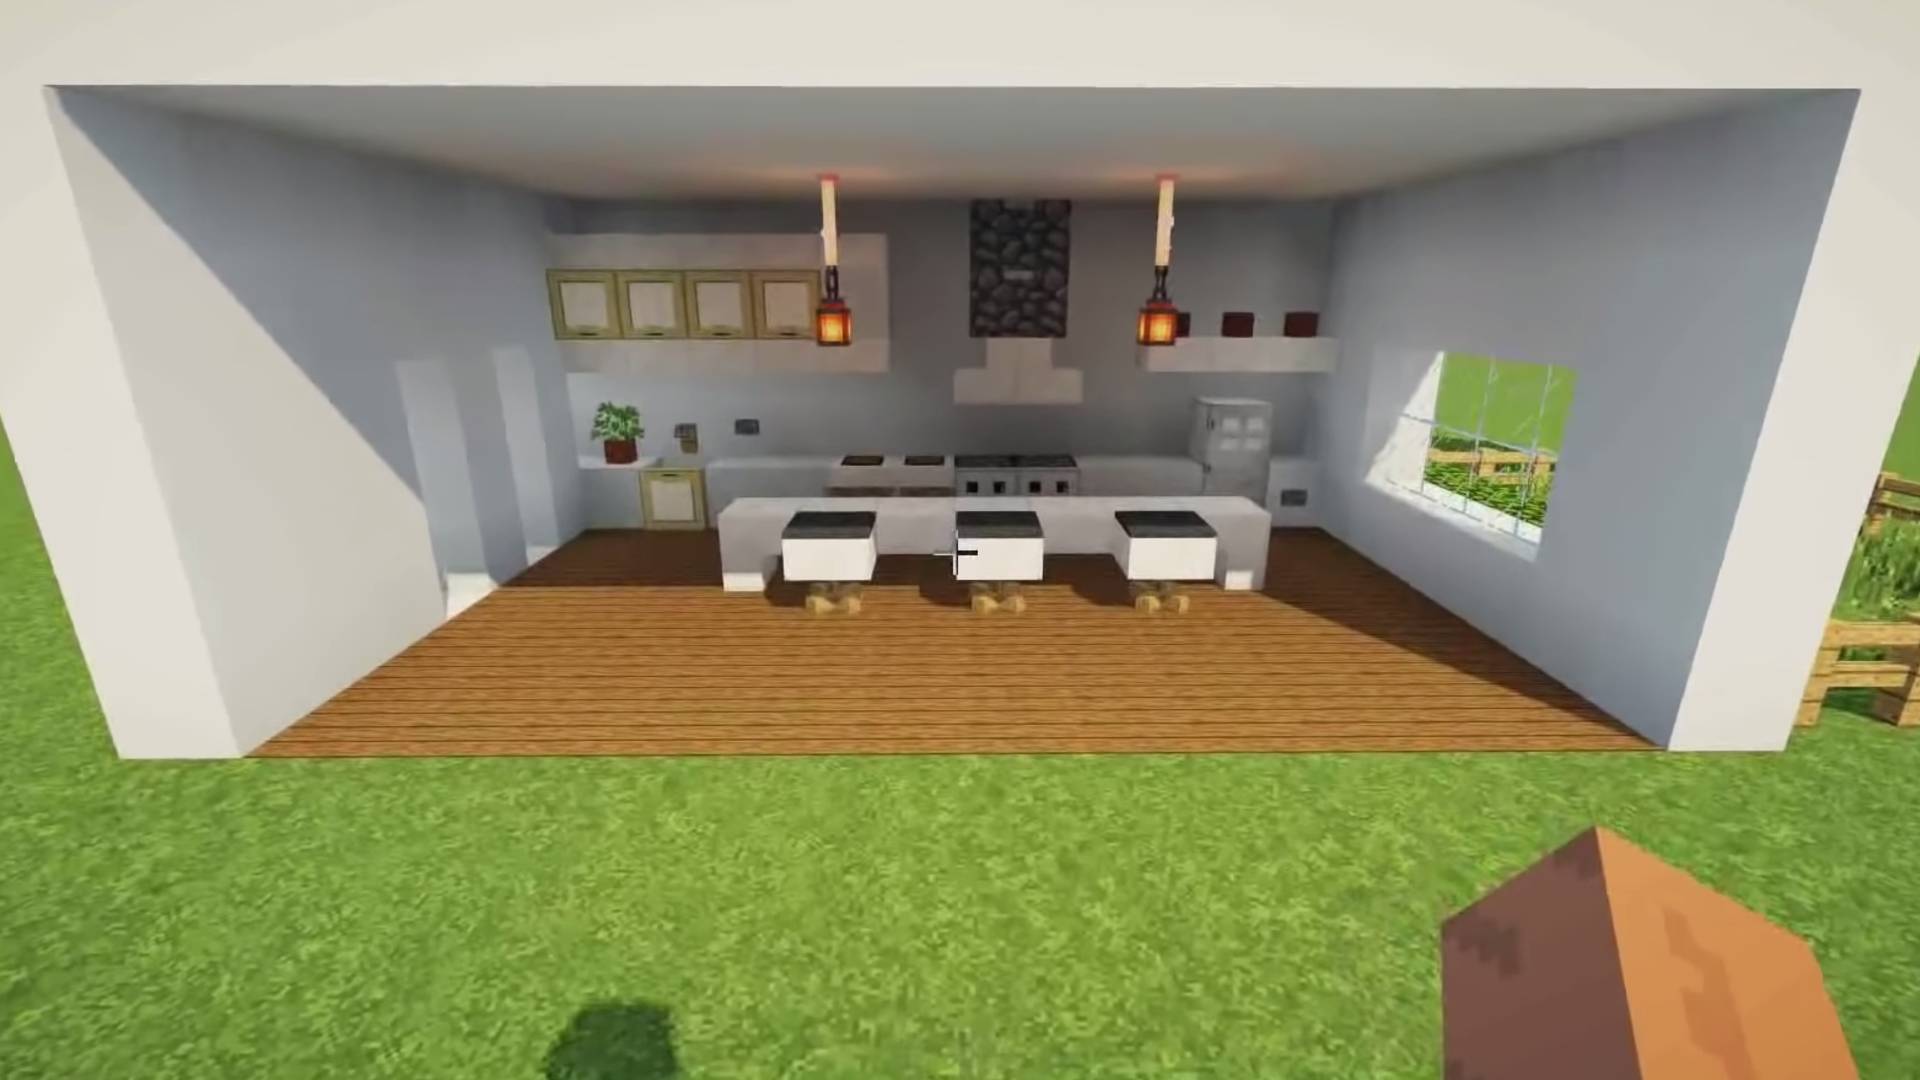  minecraft kitchen designs build